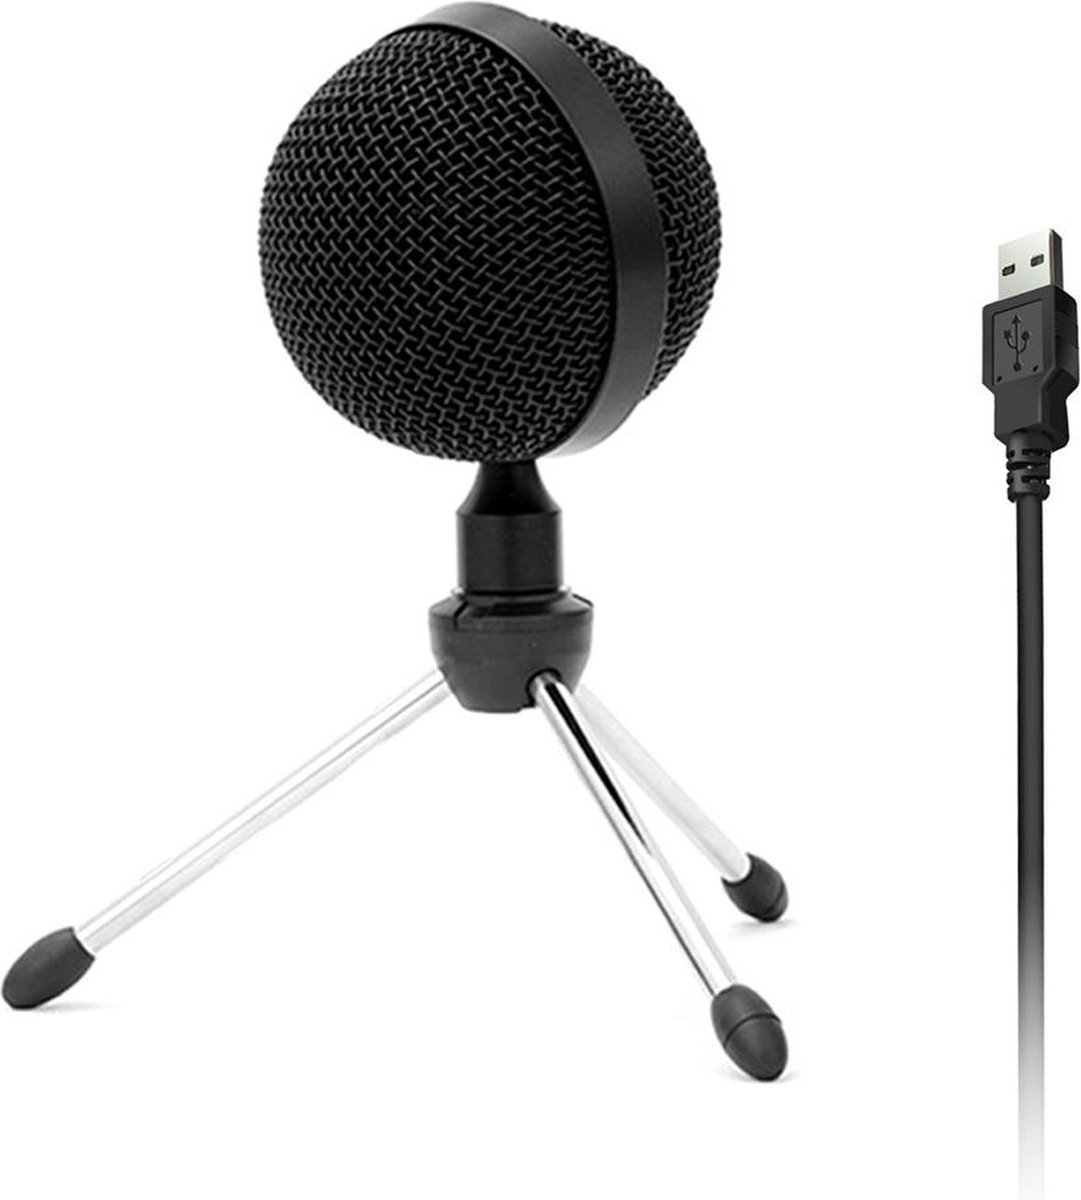 USB Microphone Condensator - USB Microfoon met Standaard - Geschikt voor PC Computer, Macbook, Laptop en Playstation